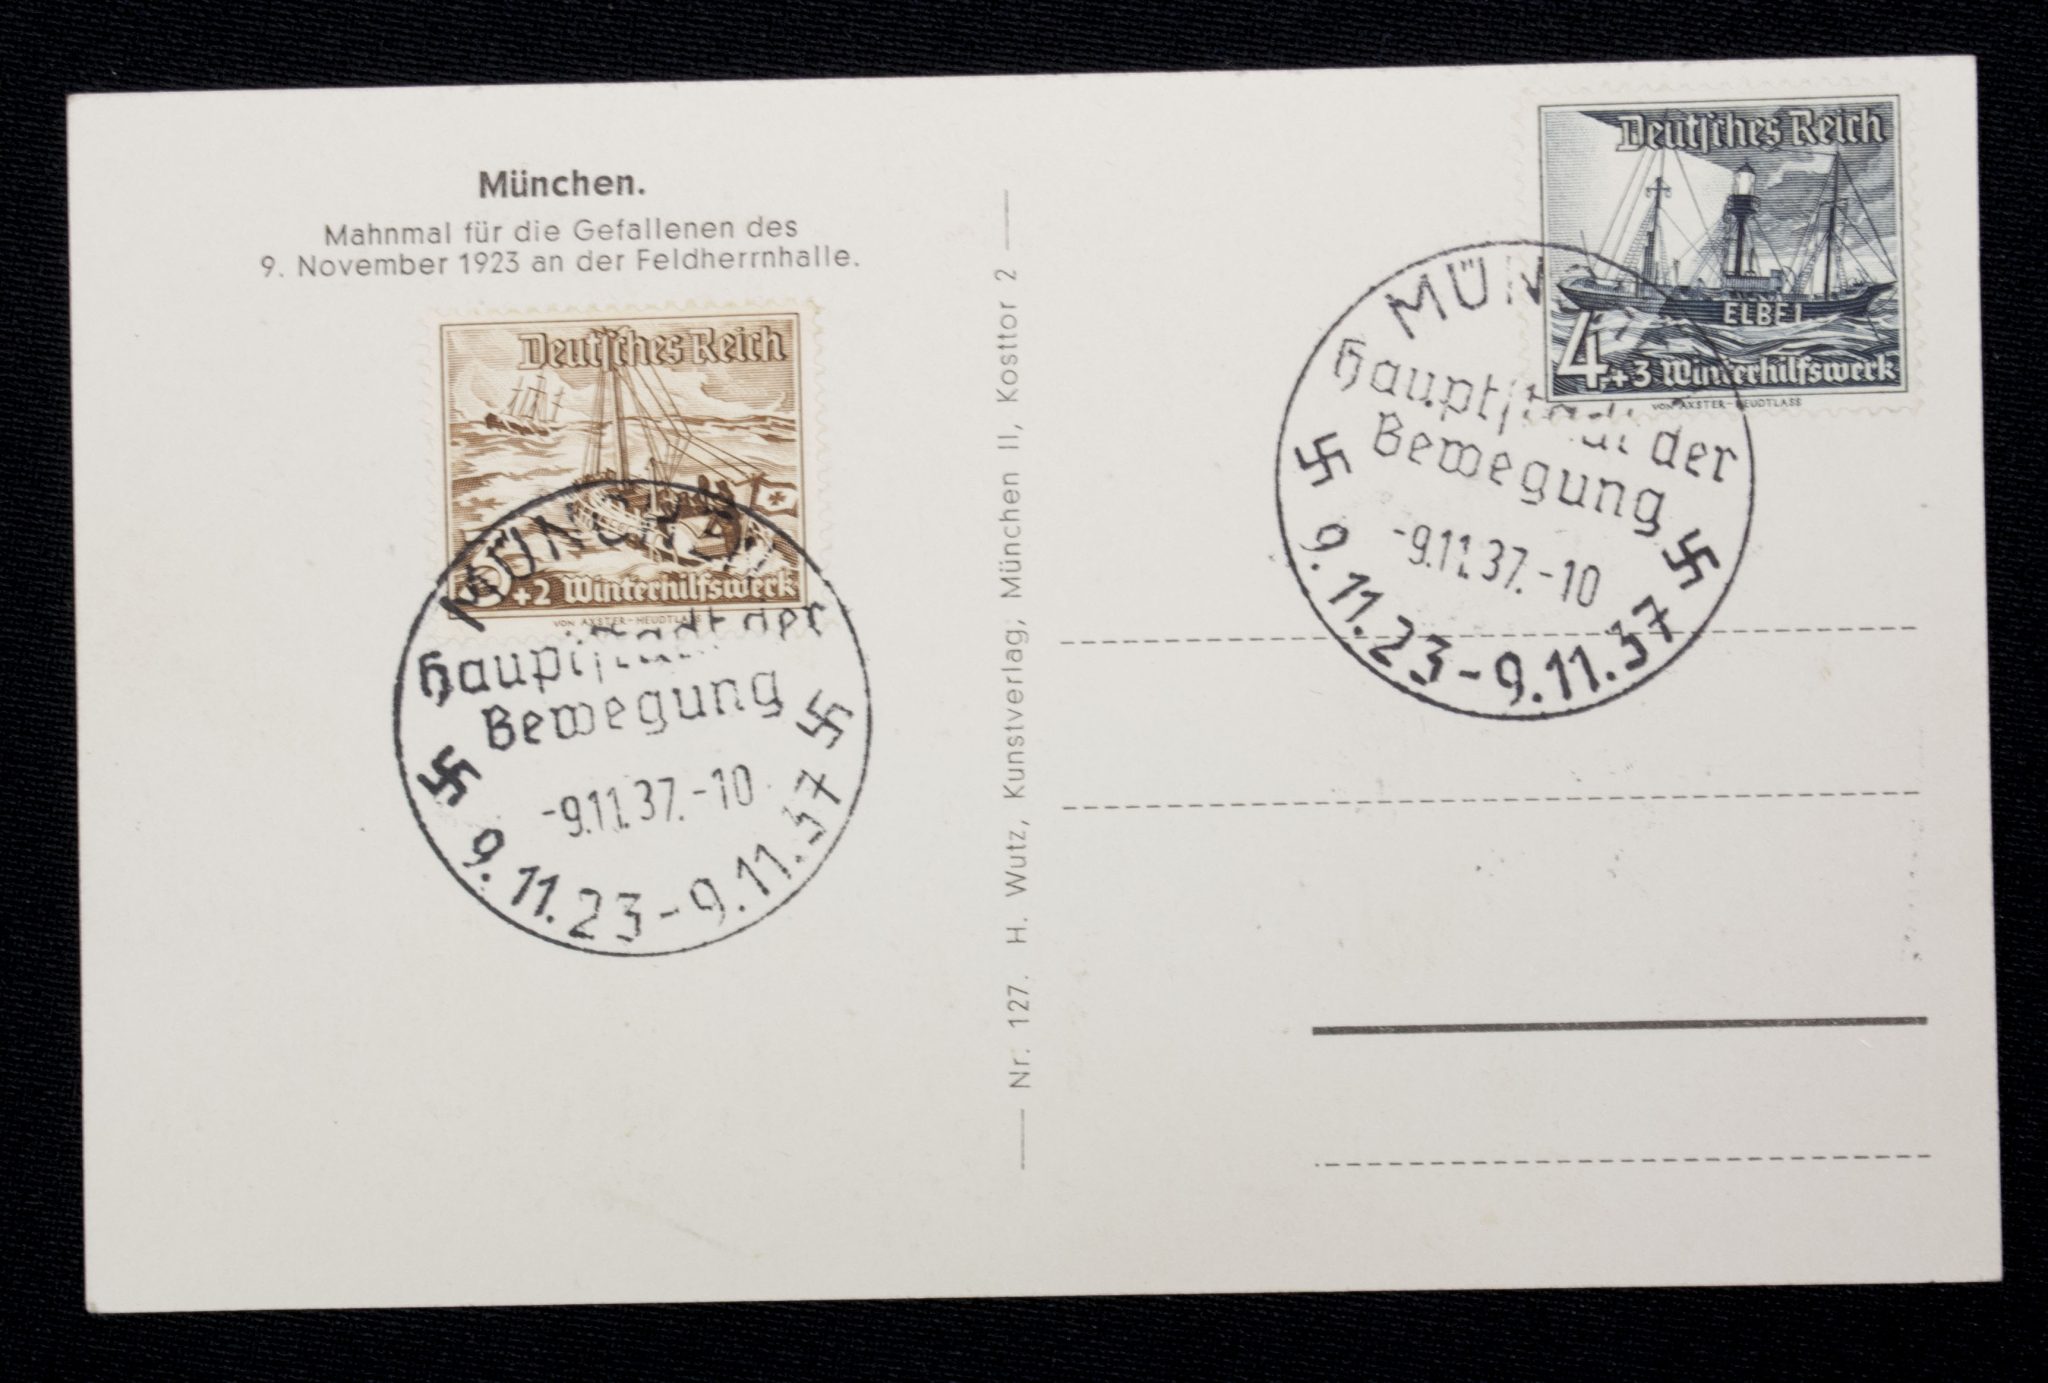 (Postcard) München, Mahnmal für die Gefallenen des 9. November 1923 an der Feldherrnhalle